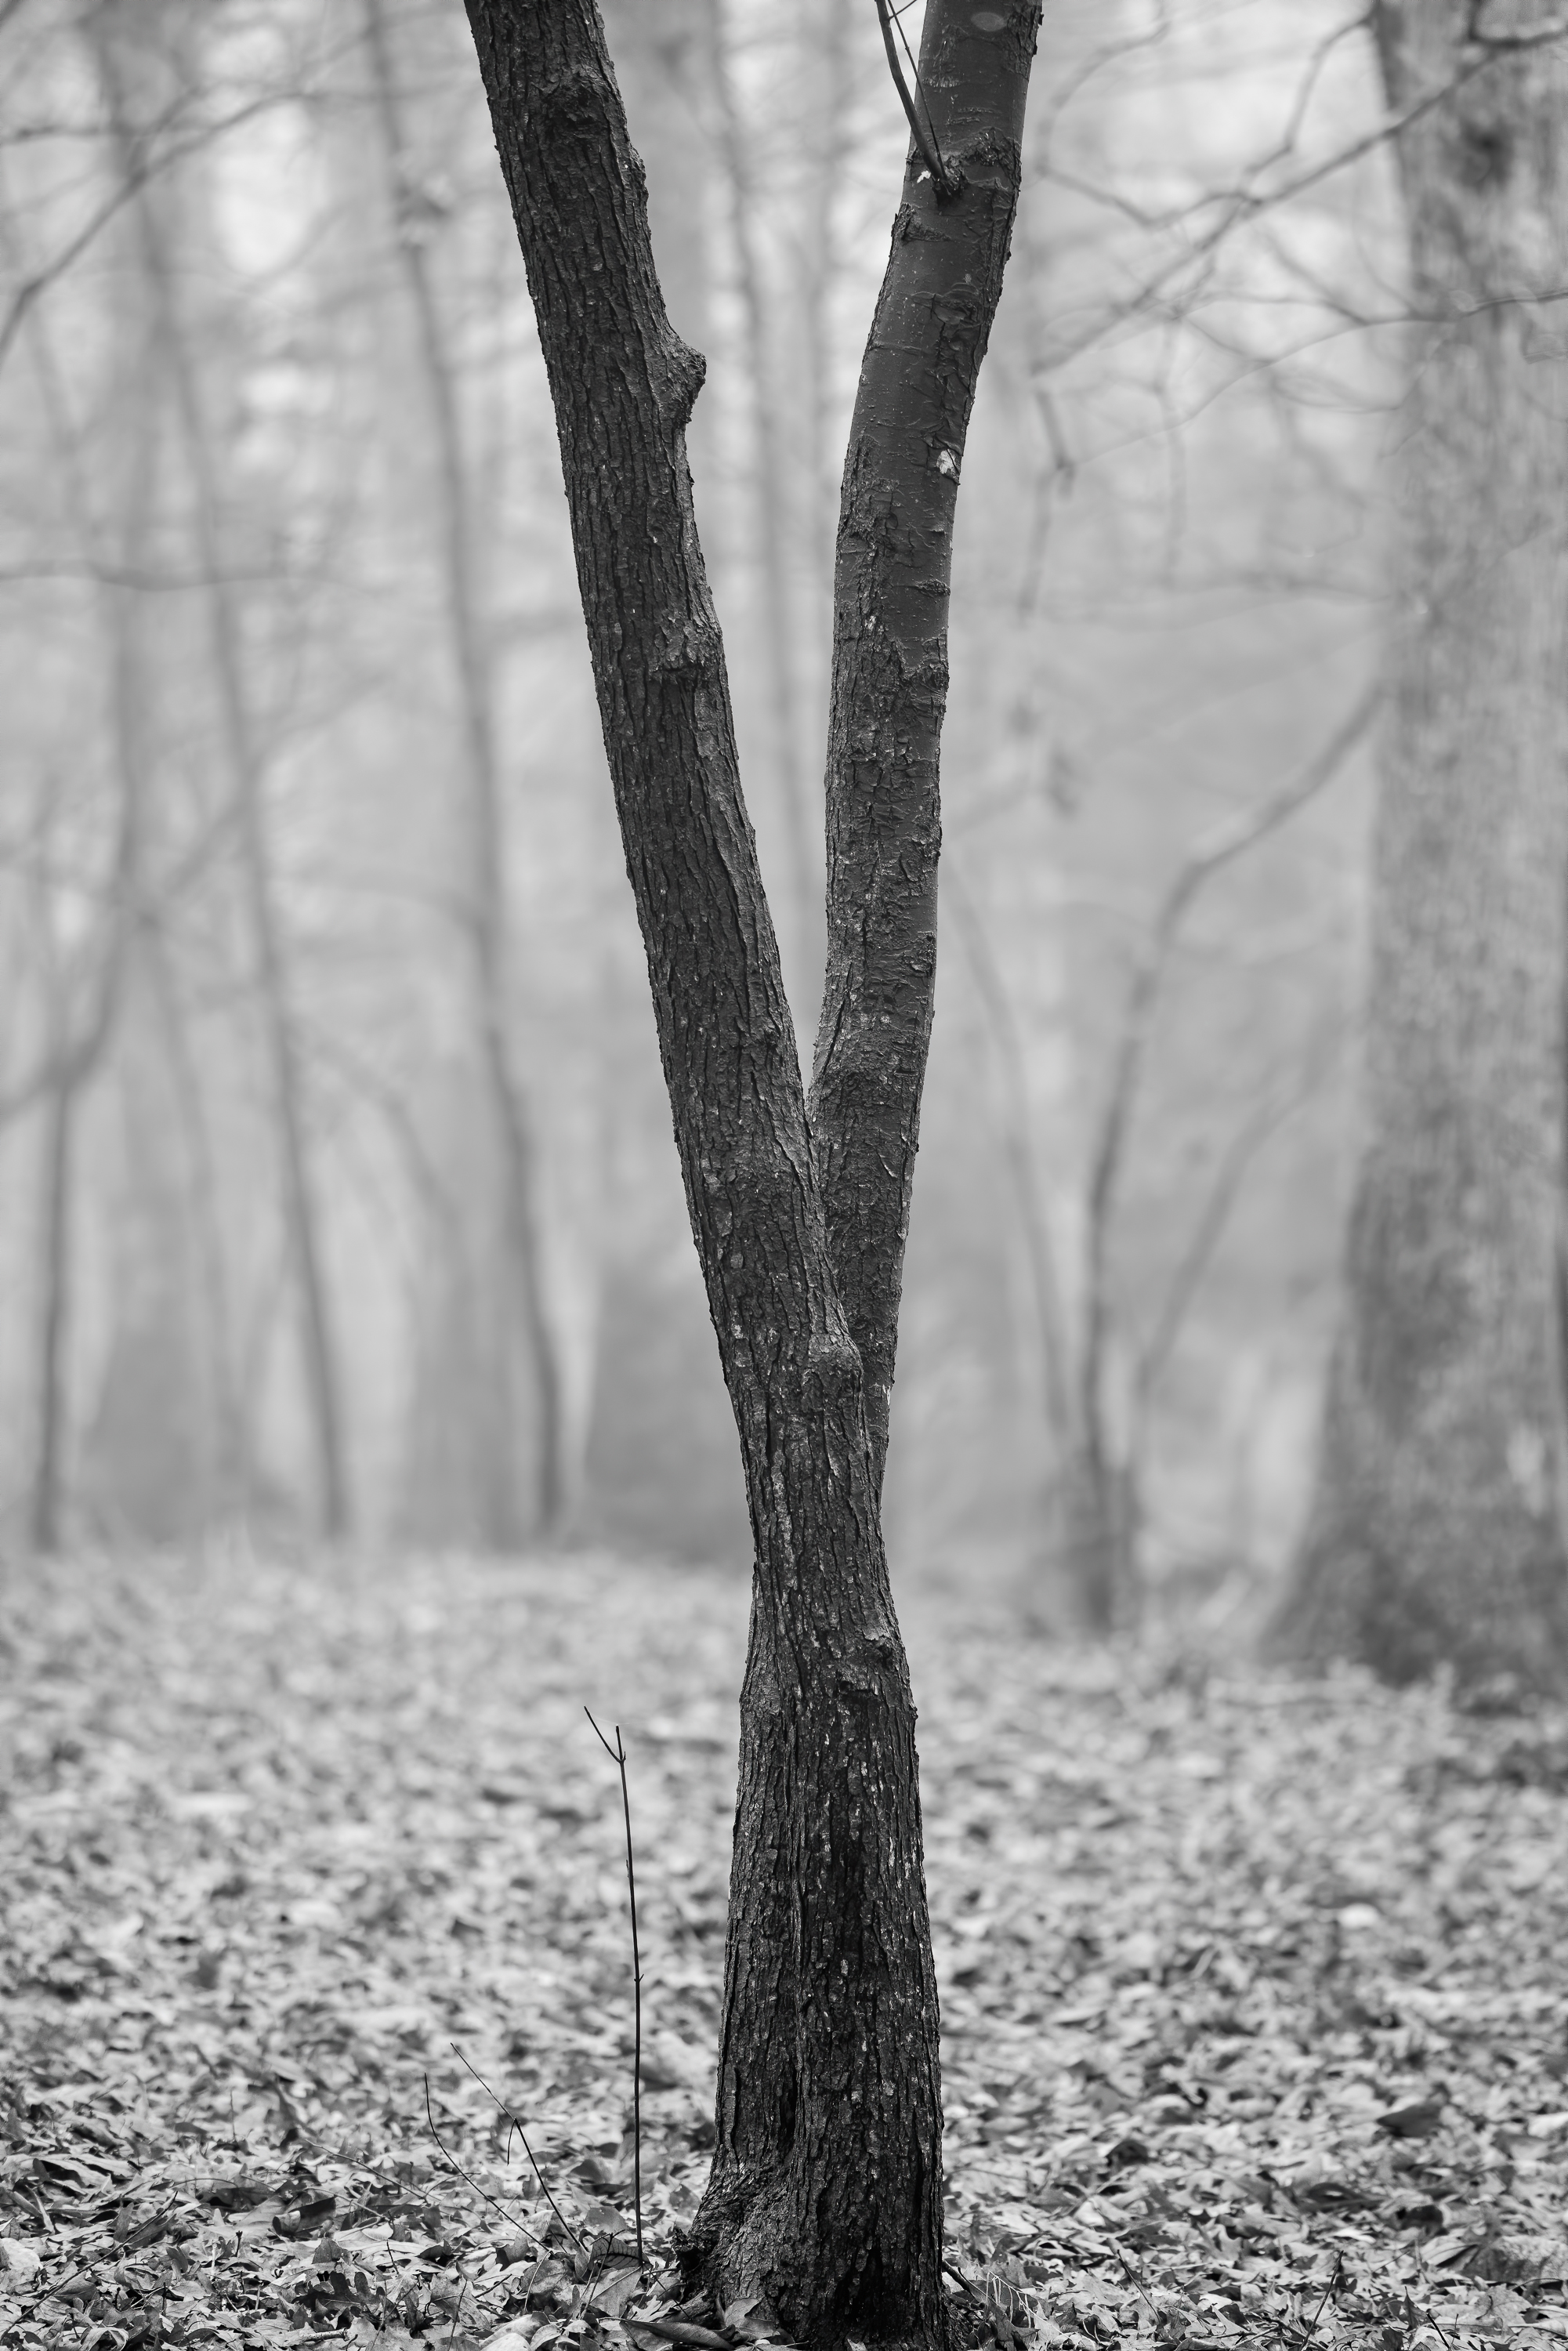 Tree with dark bark, Chapel Hill, North Carolina (2018)